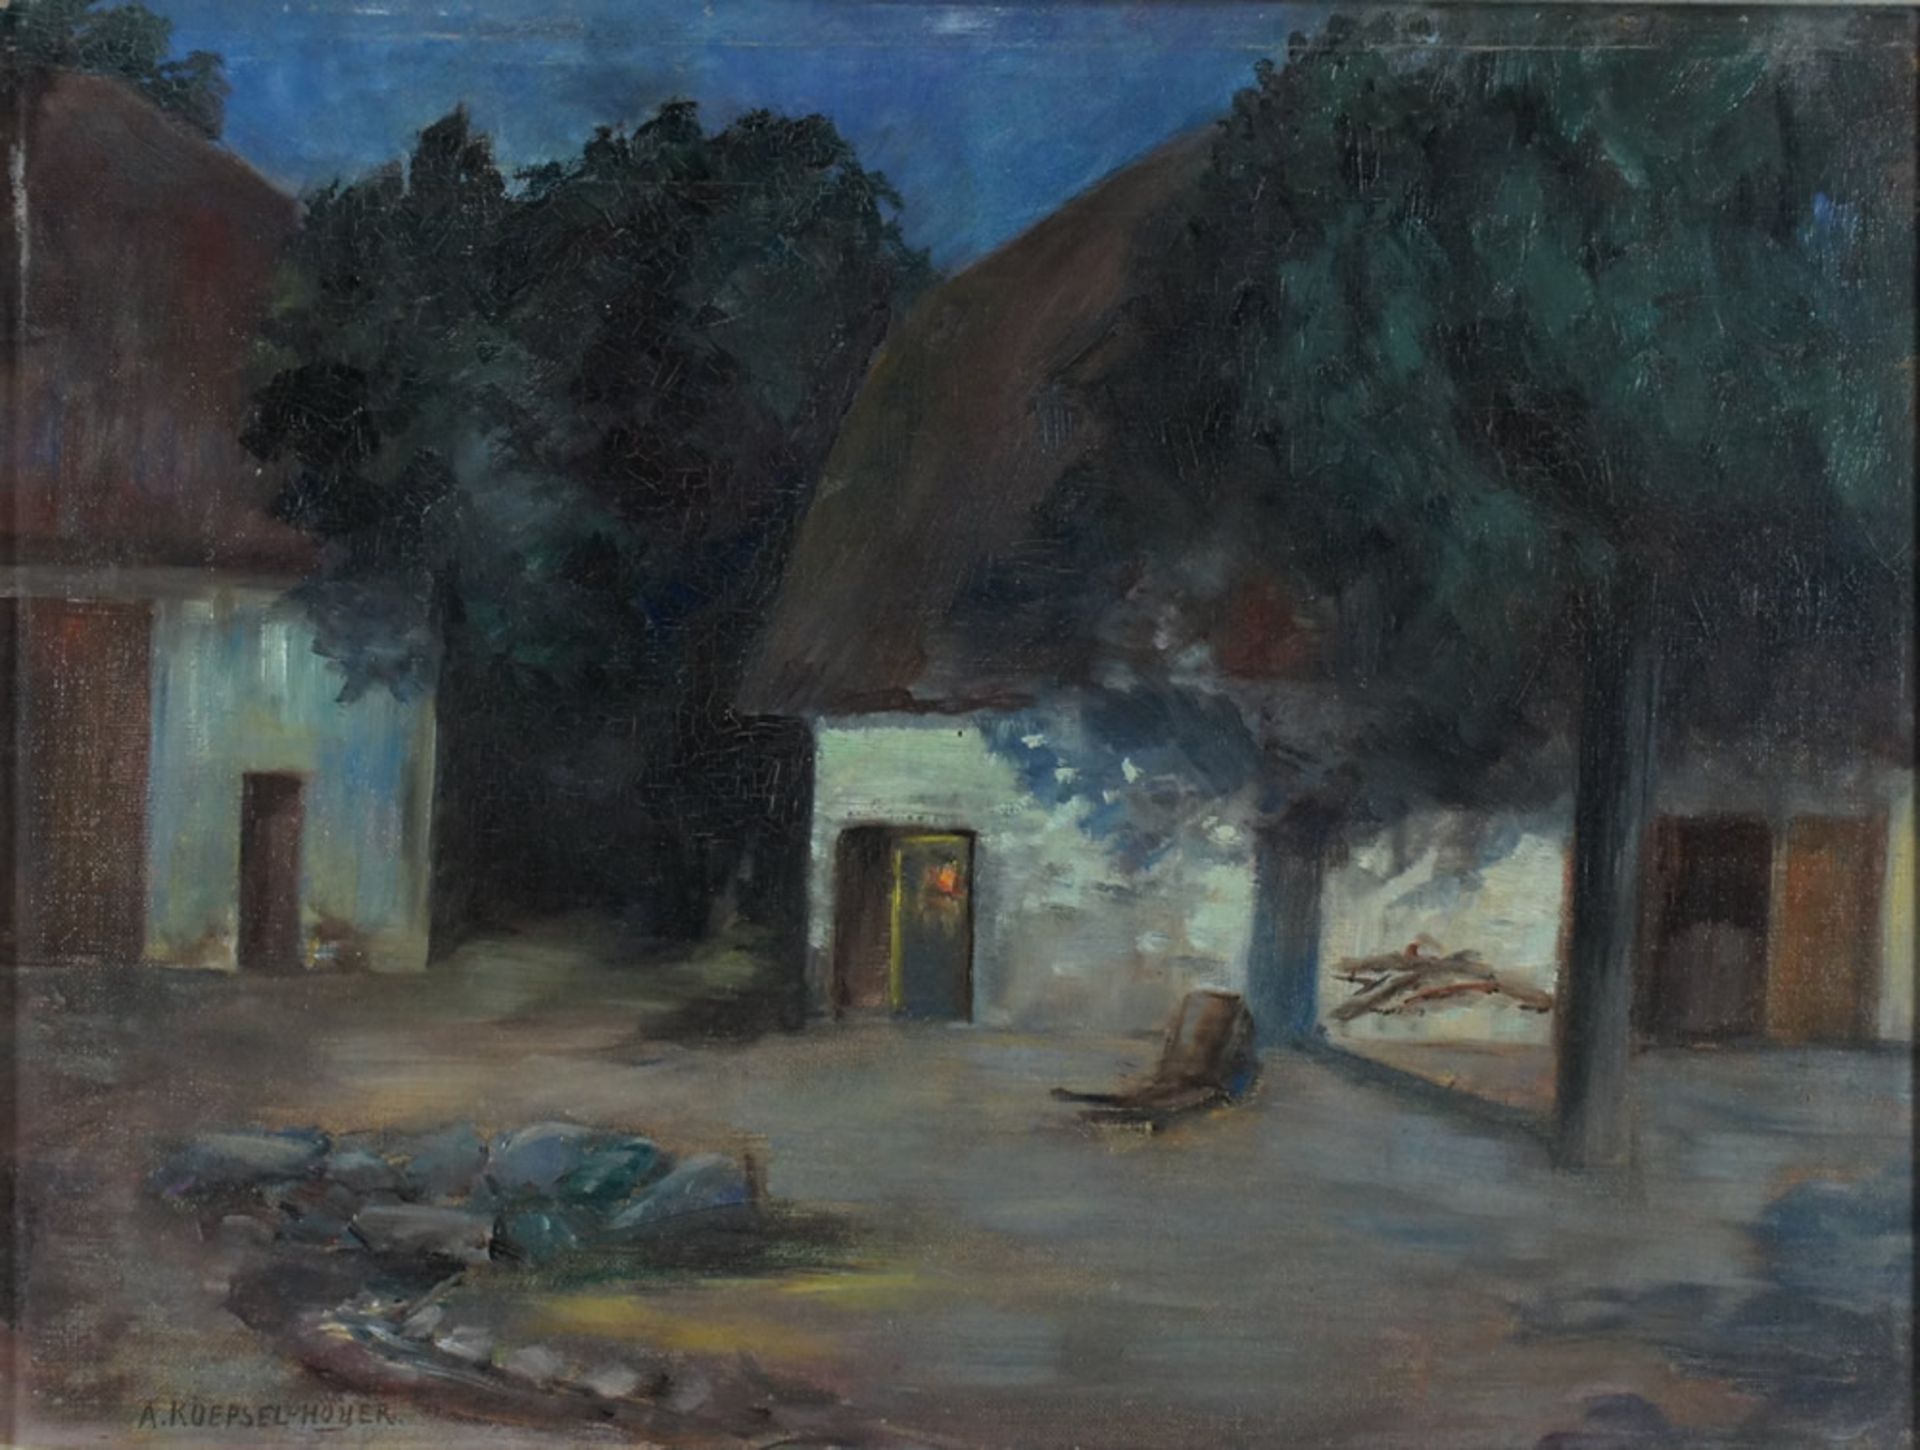 Koepsel-Hoyer, Anna, Gehöft, Öl, 35 x 47 cm, sign.